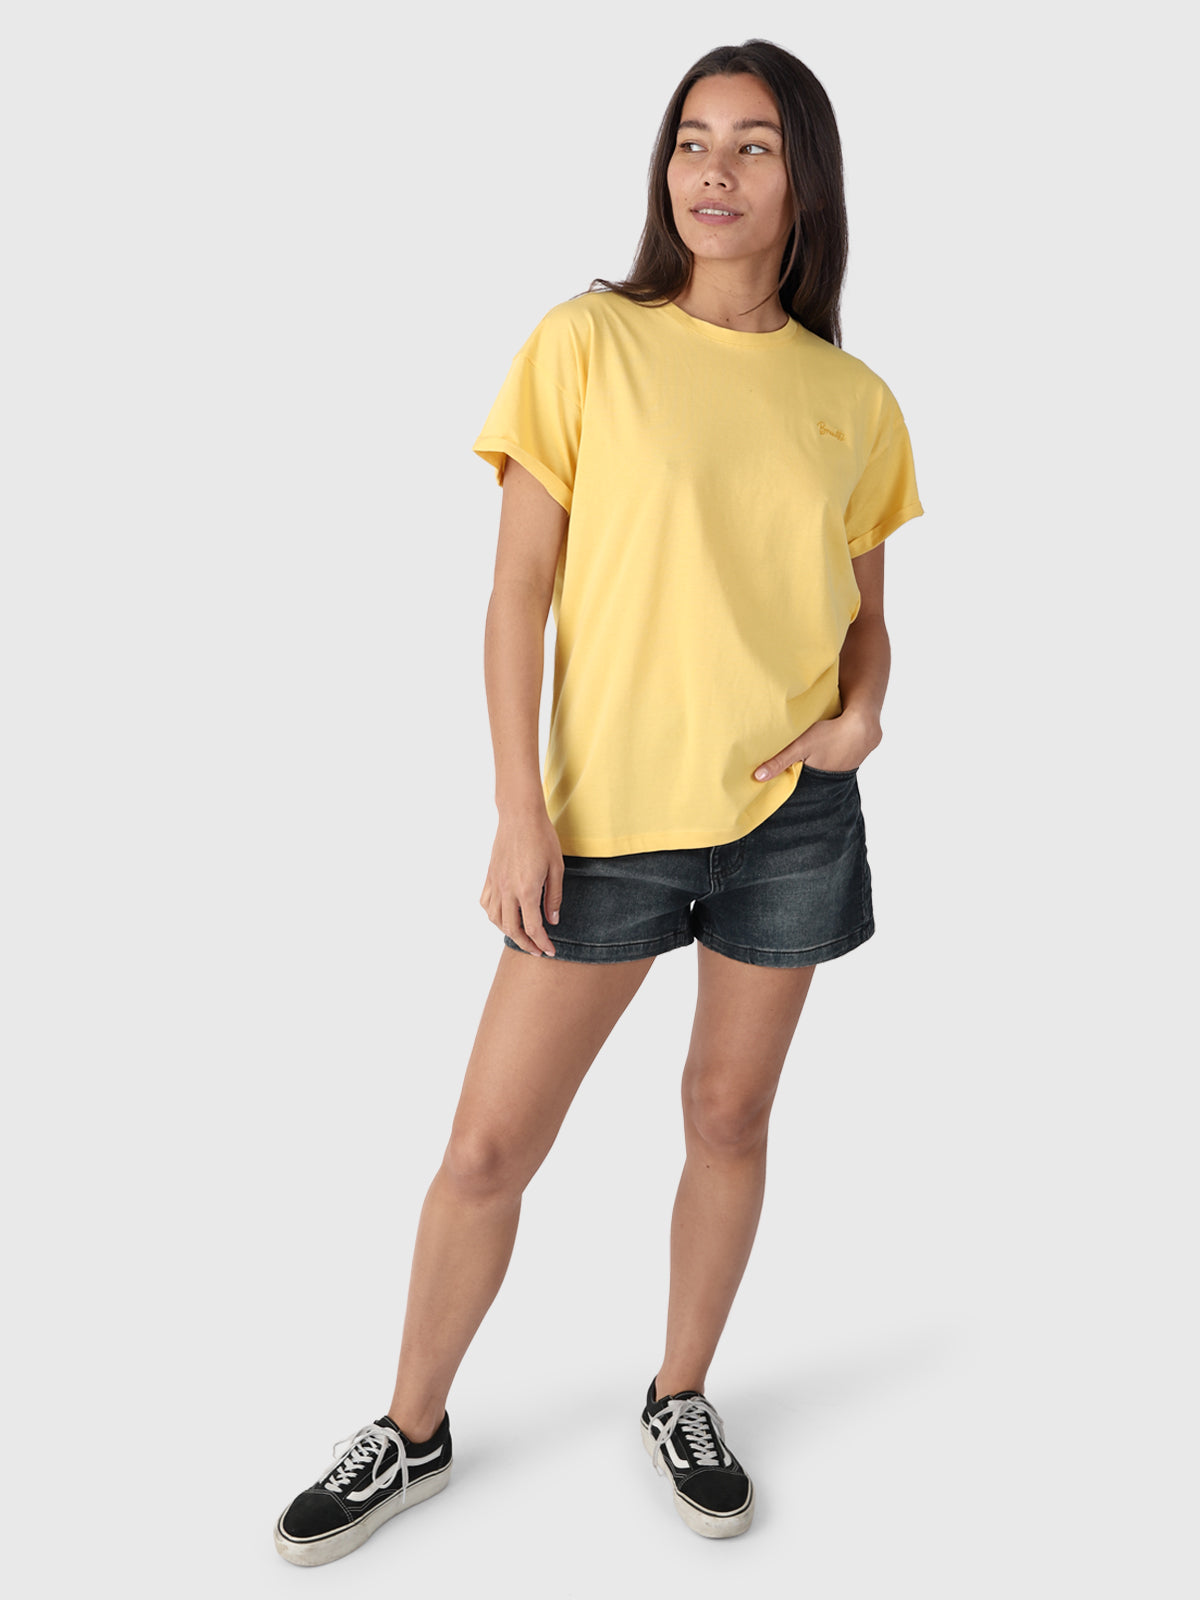 Samira-R Damen T-Shirt | Gelb
